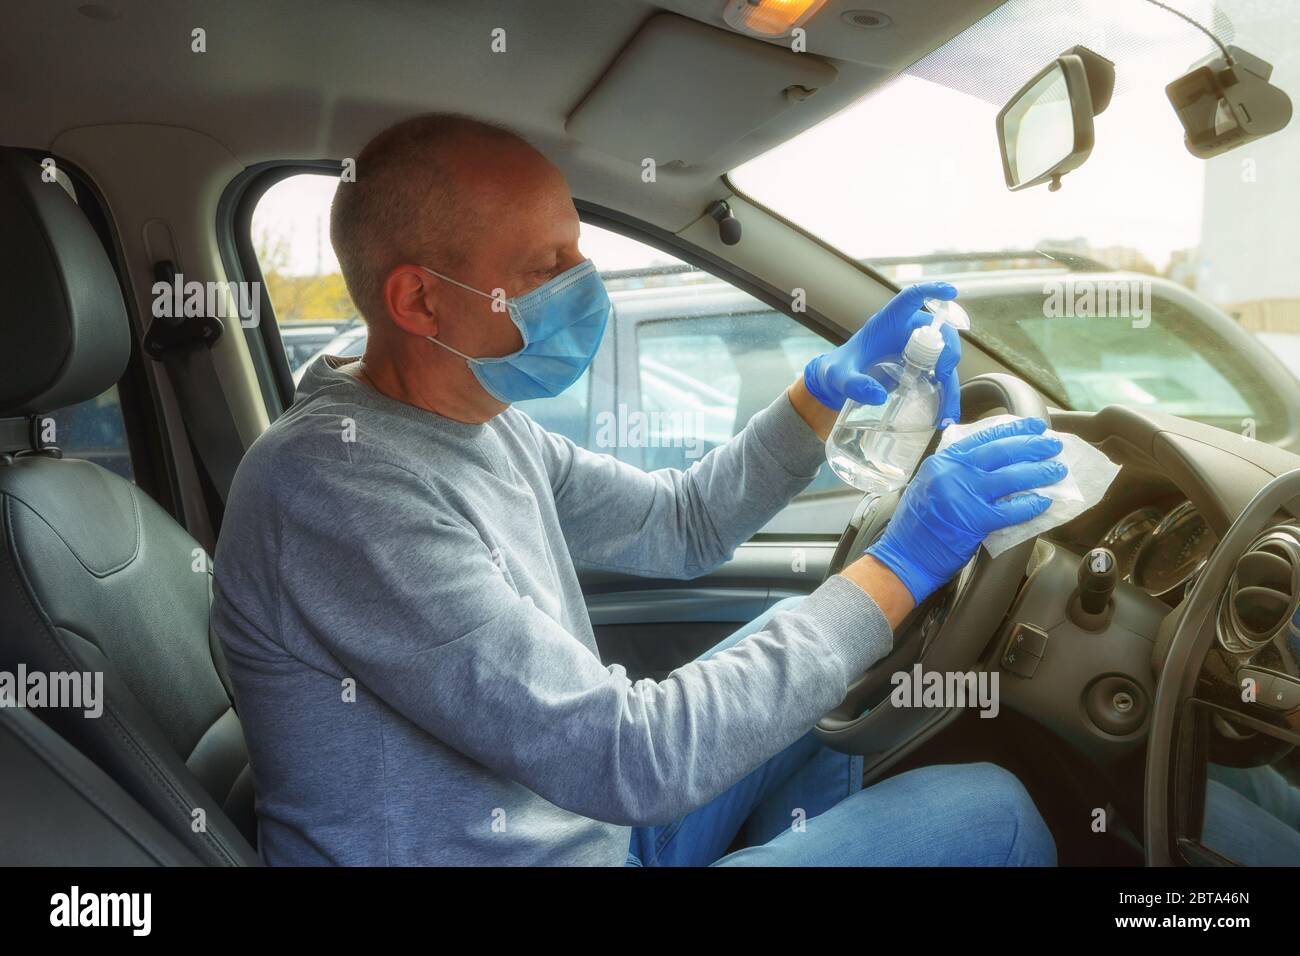 Désinfection automobile. Un homme en gants et un masque essuie le volant avec un chiffon désinfectant. Banque D'Images